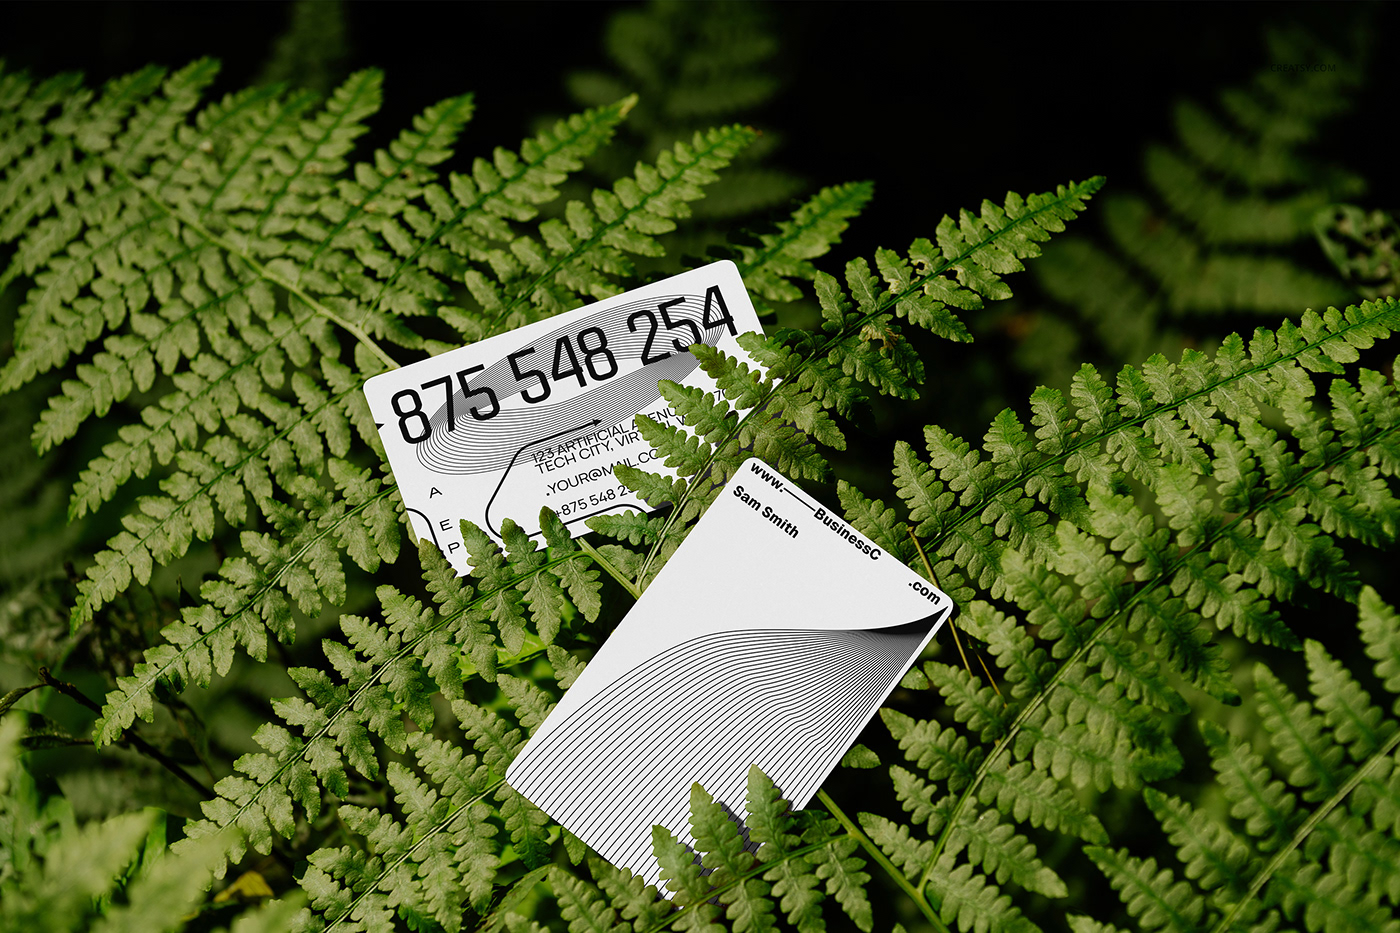 mock-up Mockup mockups Nature creatsy jungle forest leaves cards BCARD